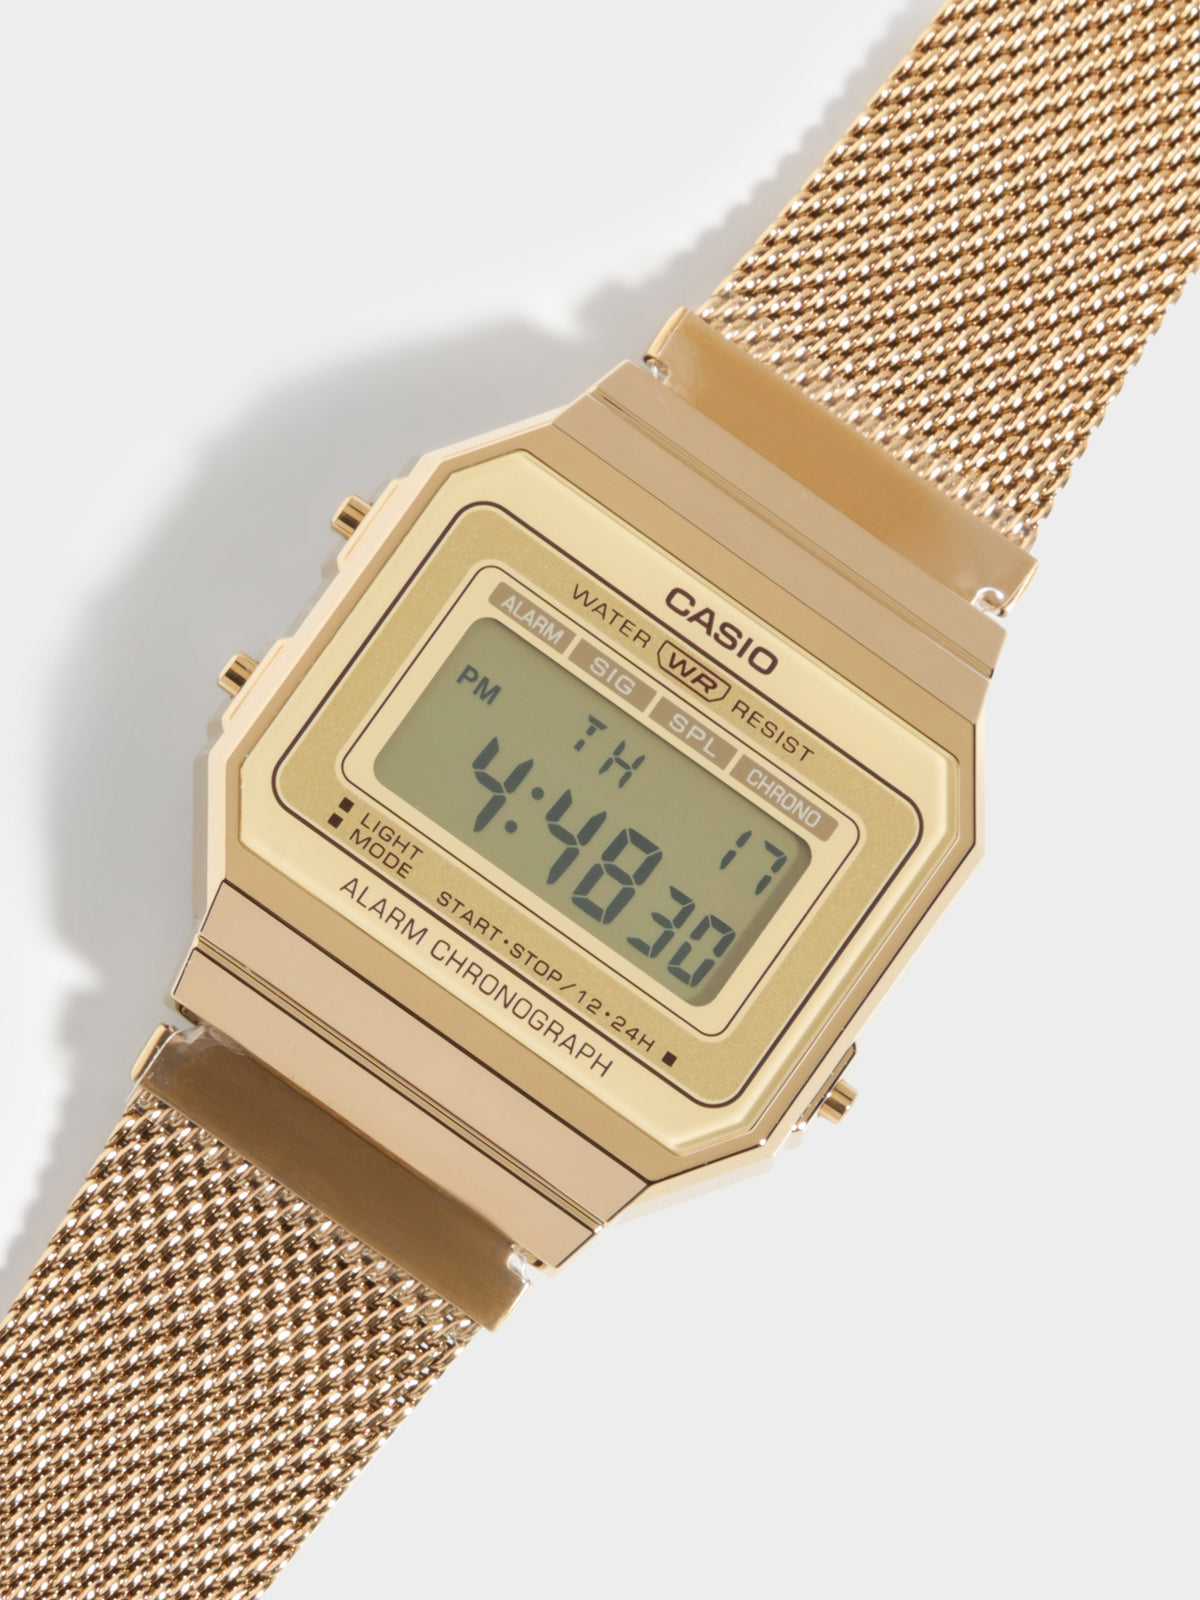 Super Slim A700 Watch in Gold